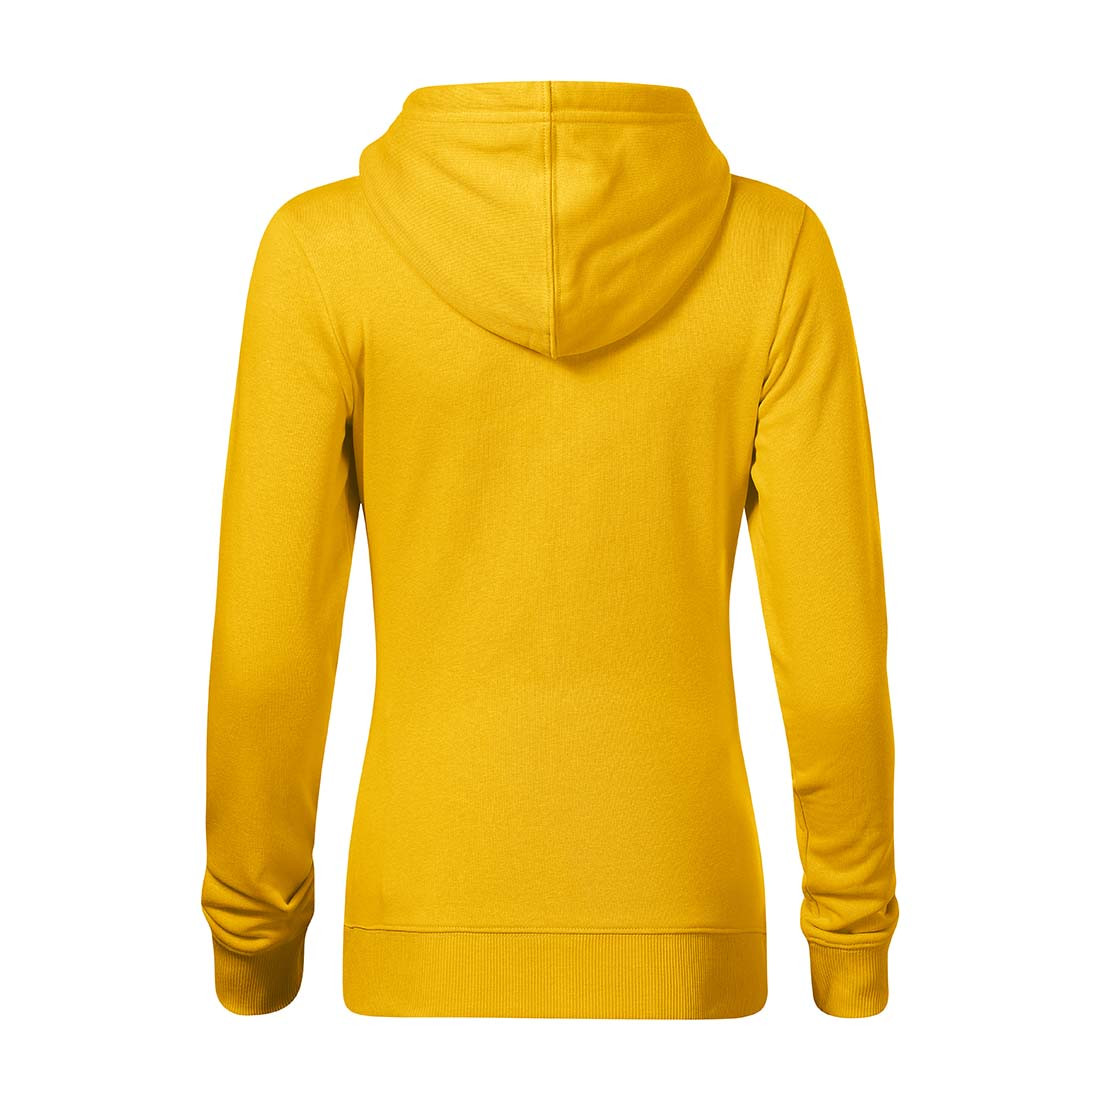 BREAK Women's Sweatshirt - Safetywear